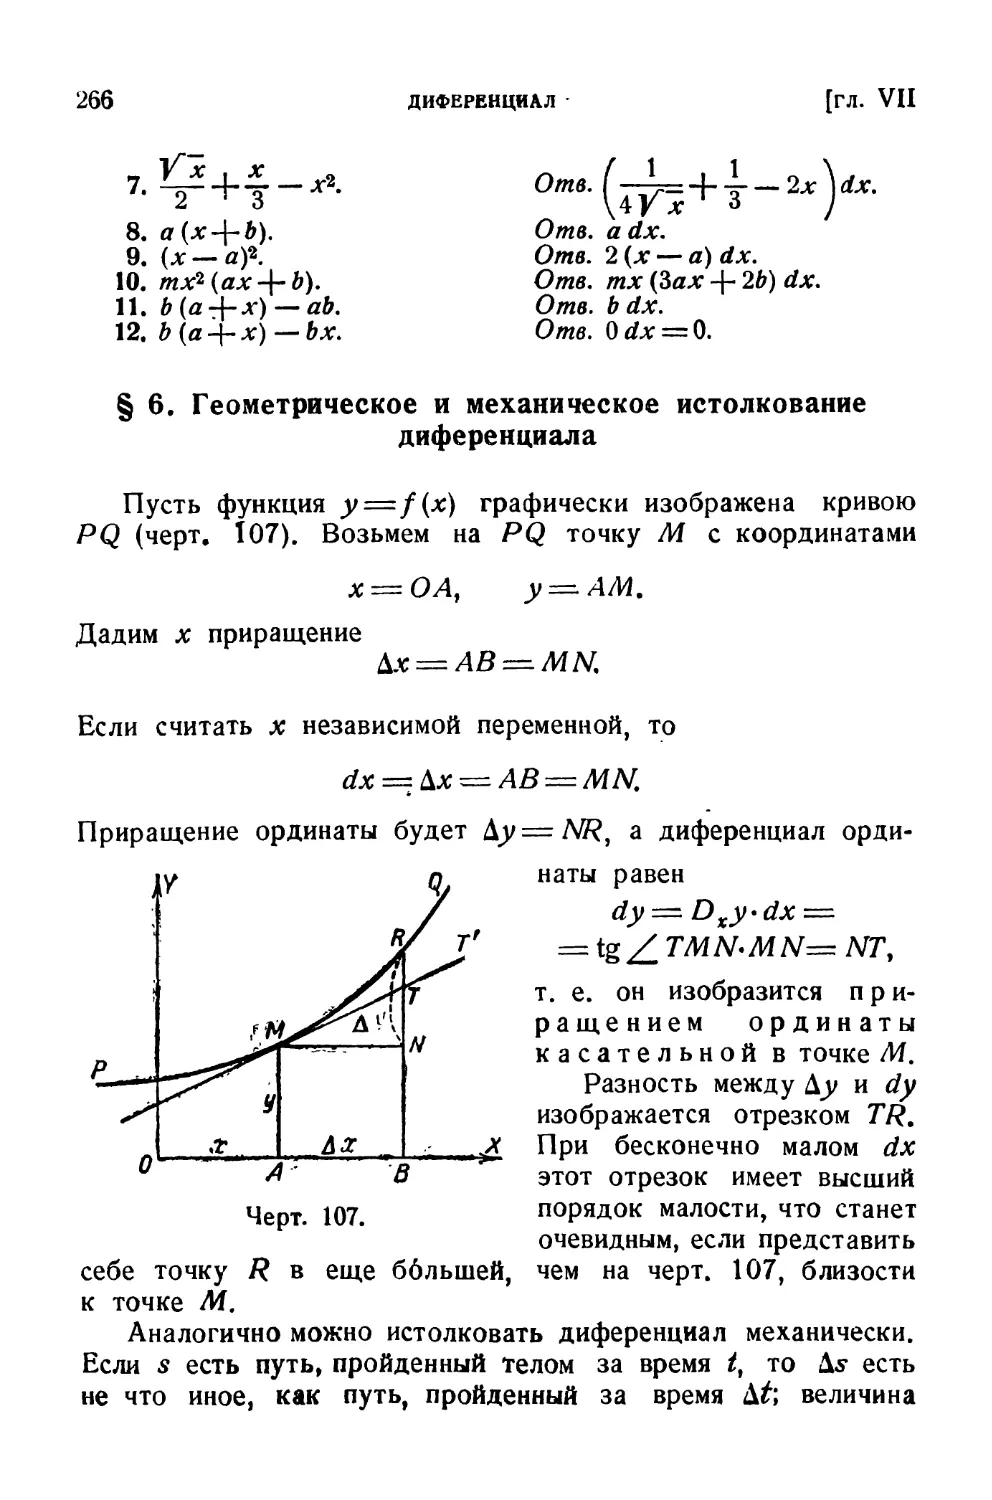 § 6. Геометрическое и механическое истолкование диференциала